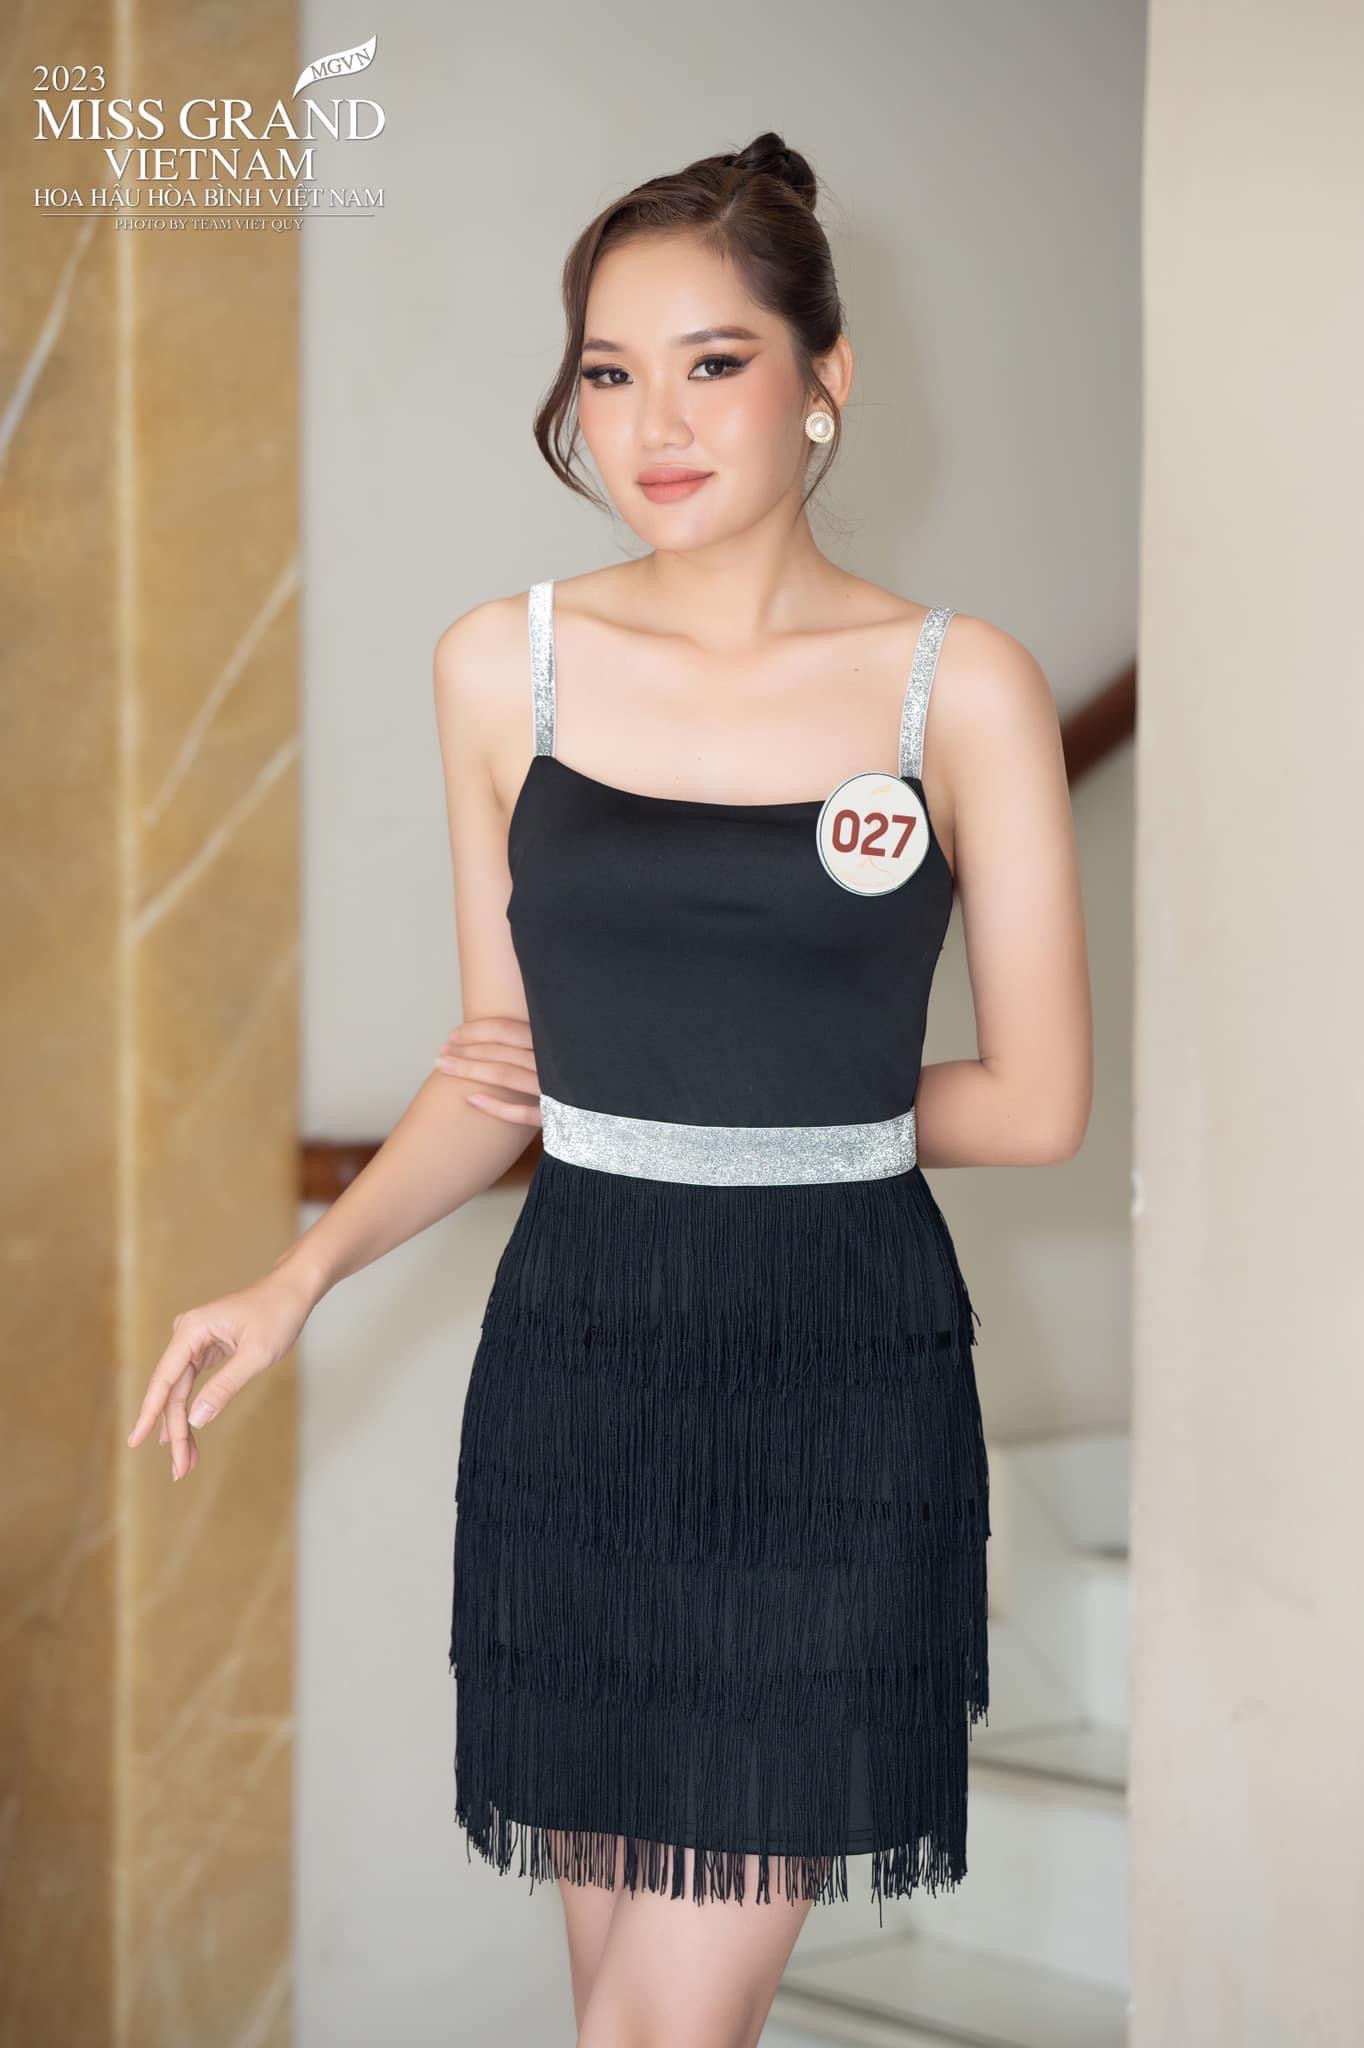 Độc lạ thí sinh tại Miss Grand Vietnam 2023: Giấu trang phục "kín như bưng", biết pro5 mới bất ngờ - Ảnh 6.